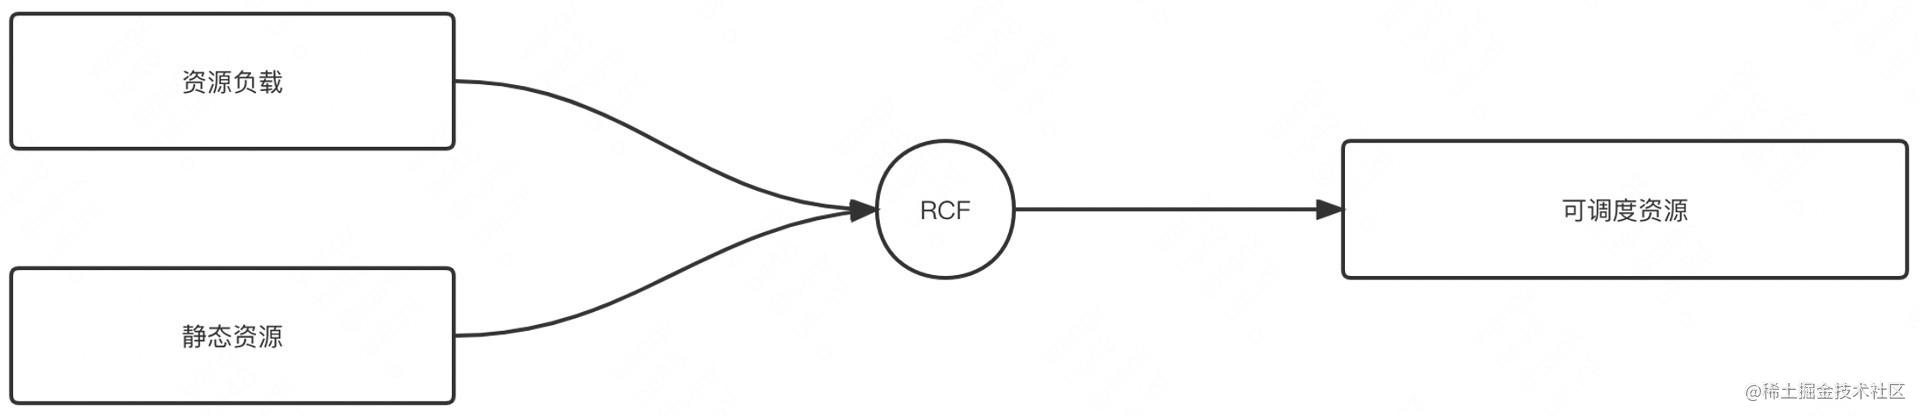 图6 RCF实现节点负载和可调度资源转换